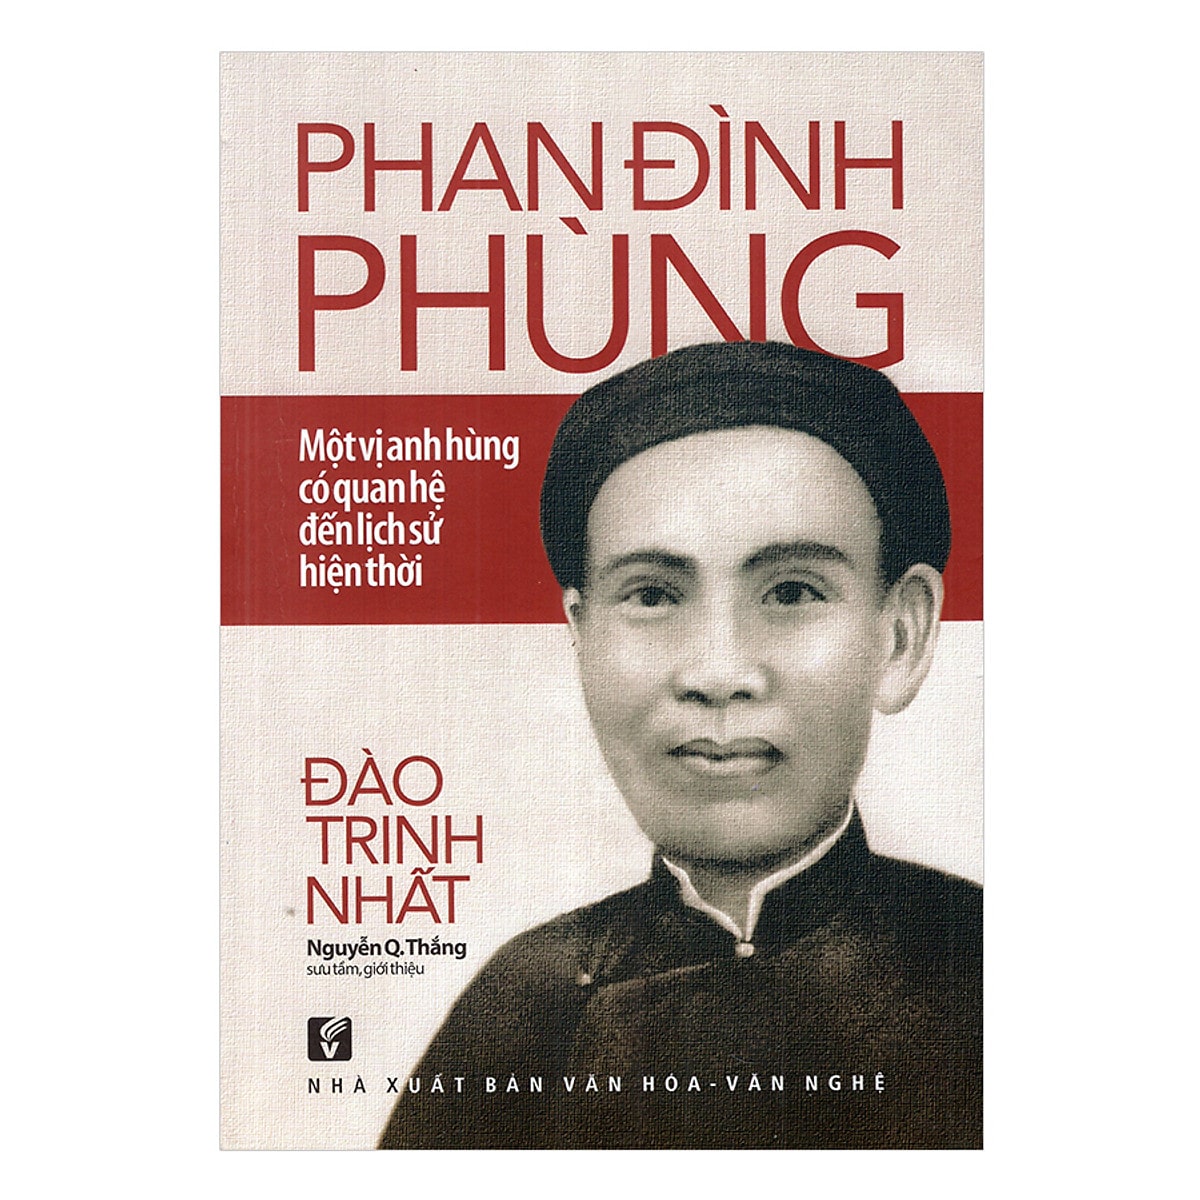 01_Phan_Dinh_Phung_mot_vi_anh_hung_co_quan_he_lich_su_Viet_Nam-min